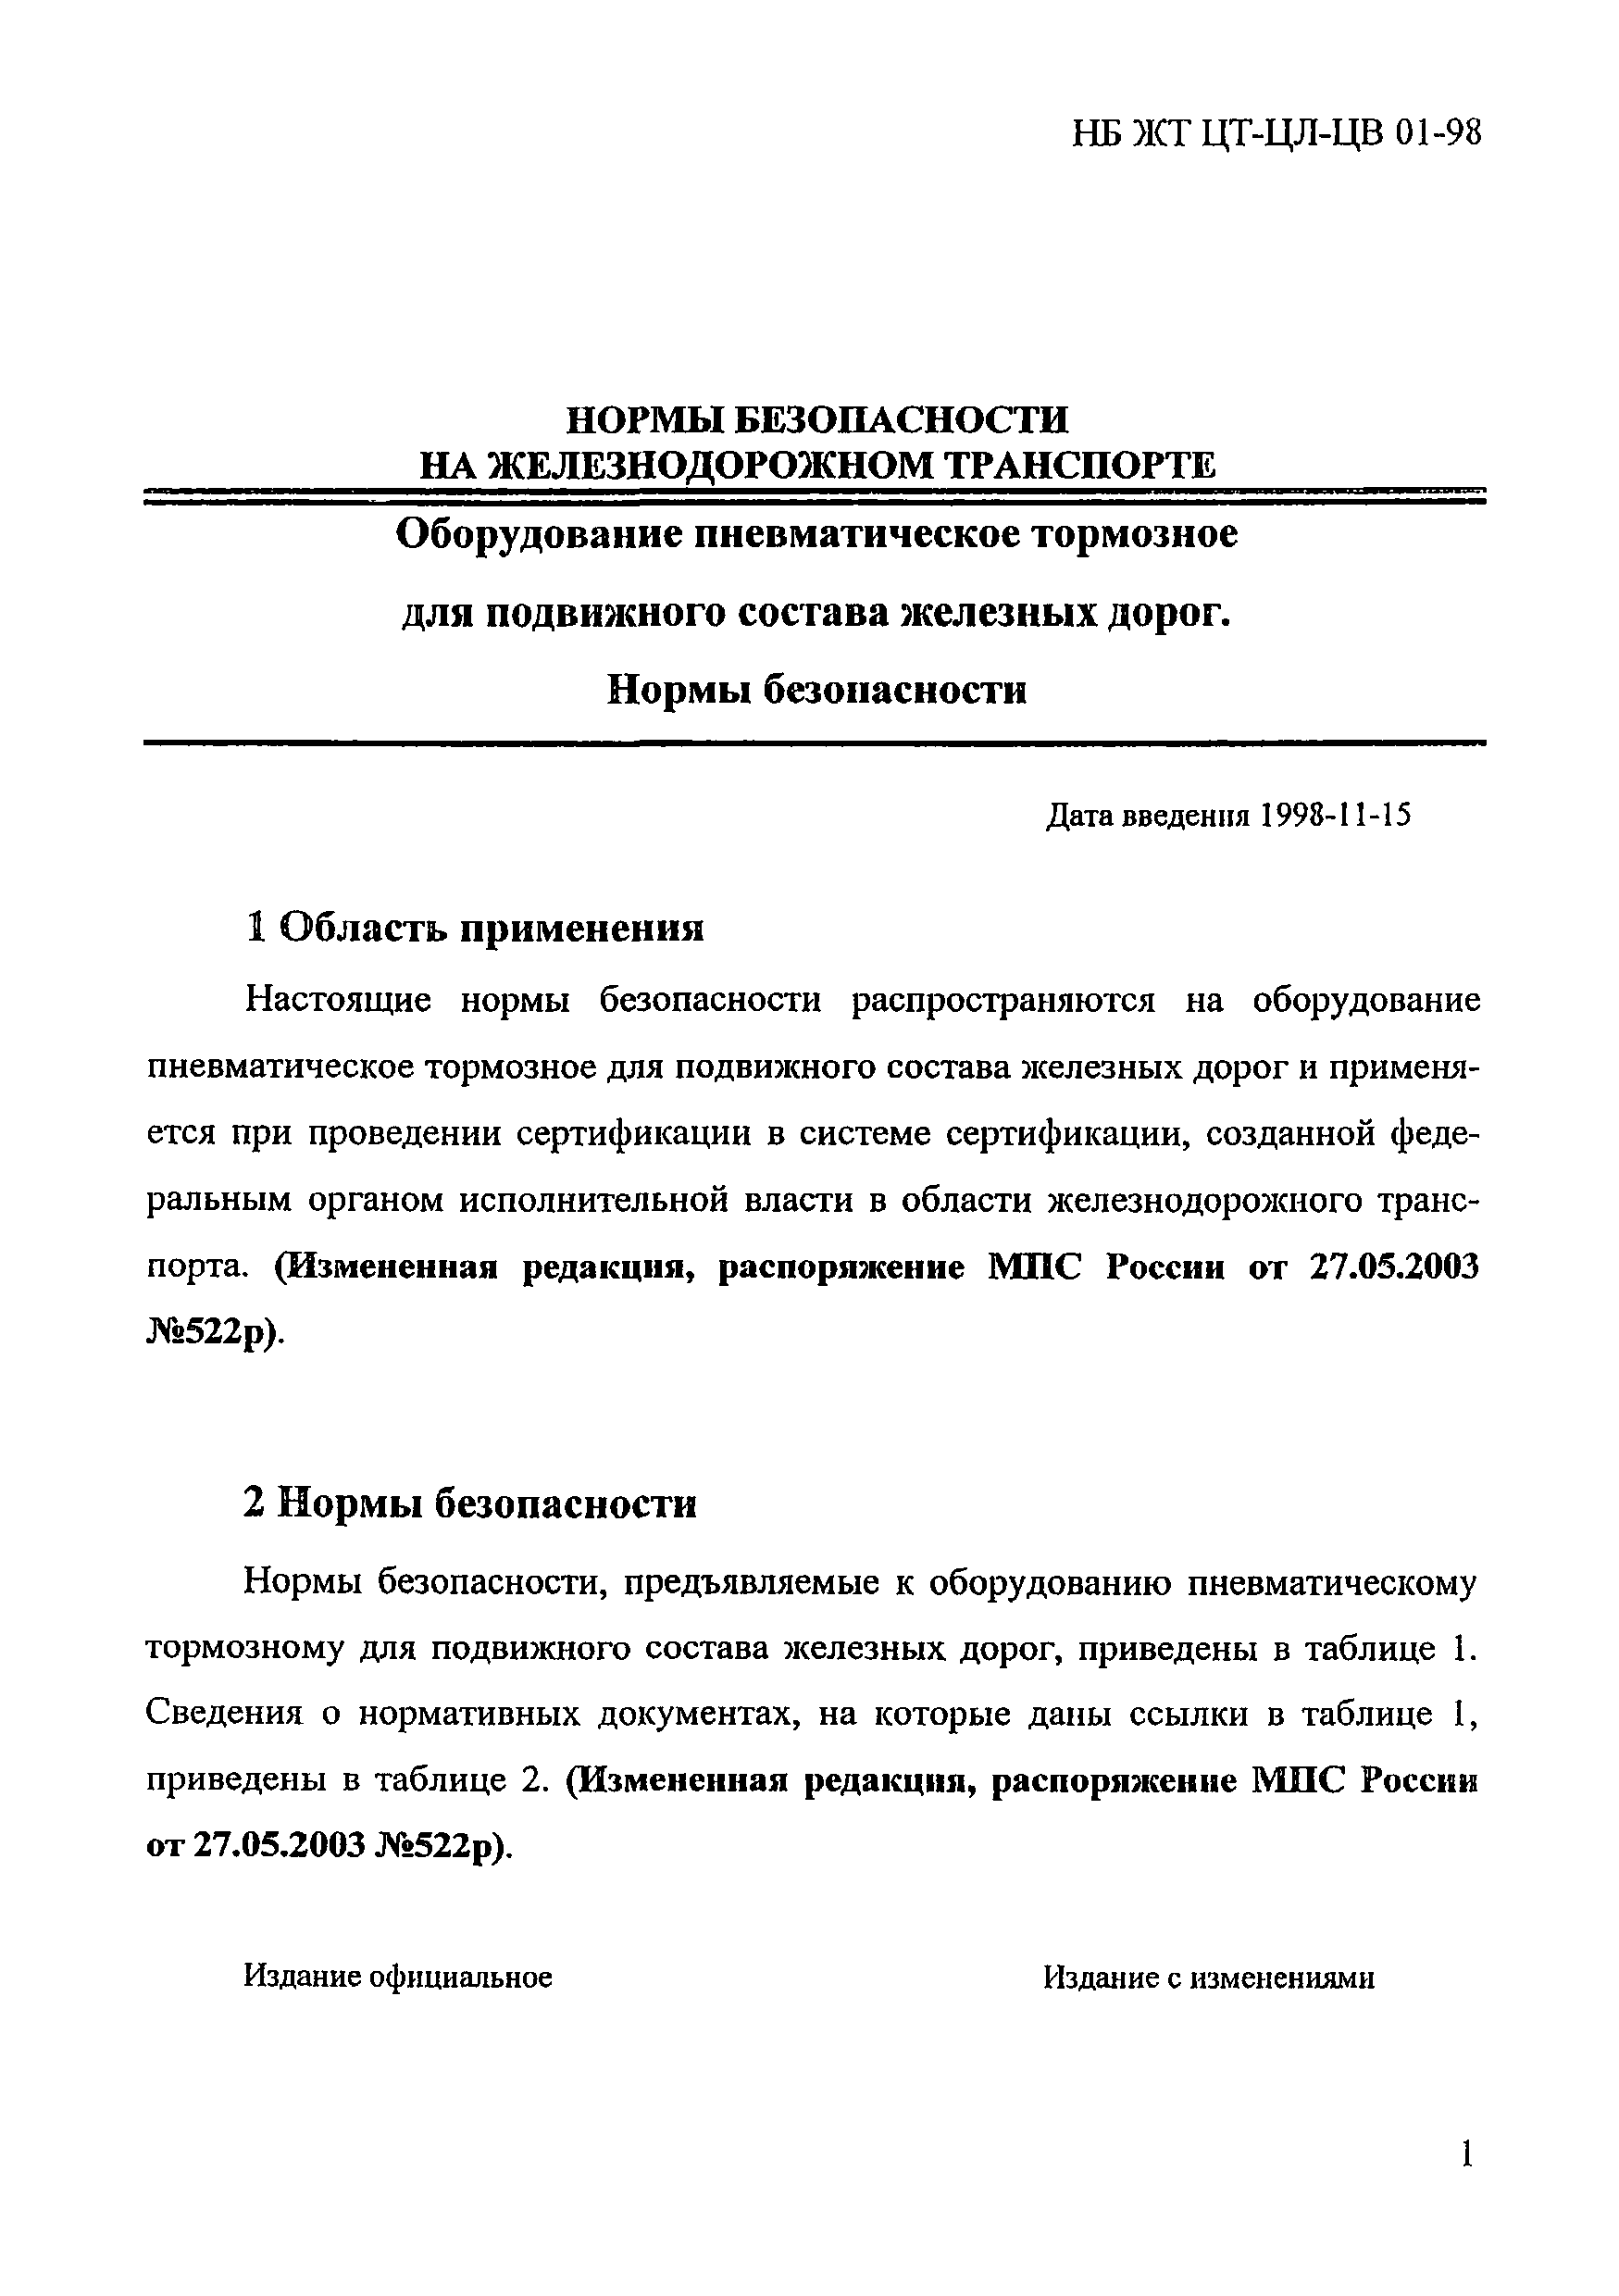 НБ ЖТ ЦТ-ЦЛ-ЦВ 01-98